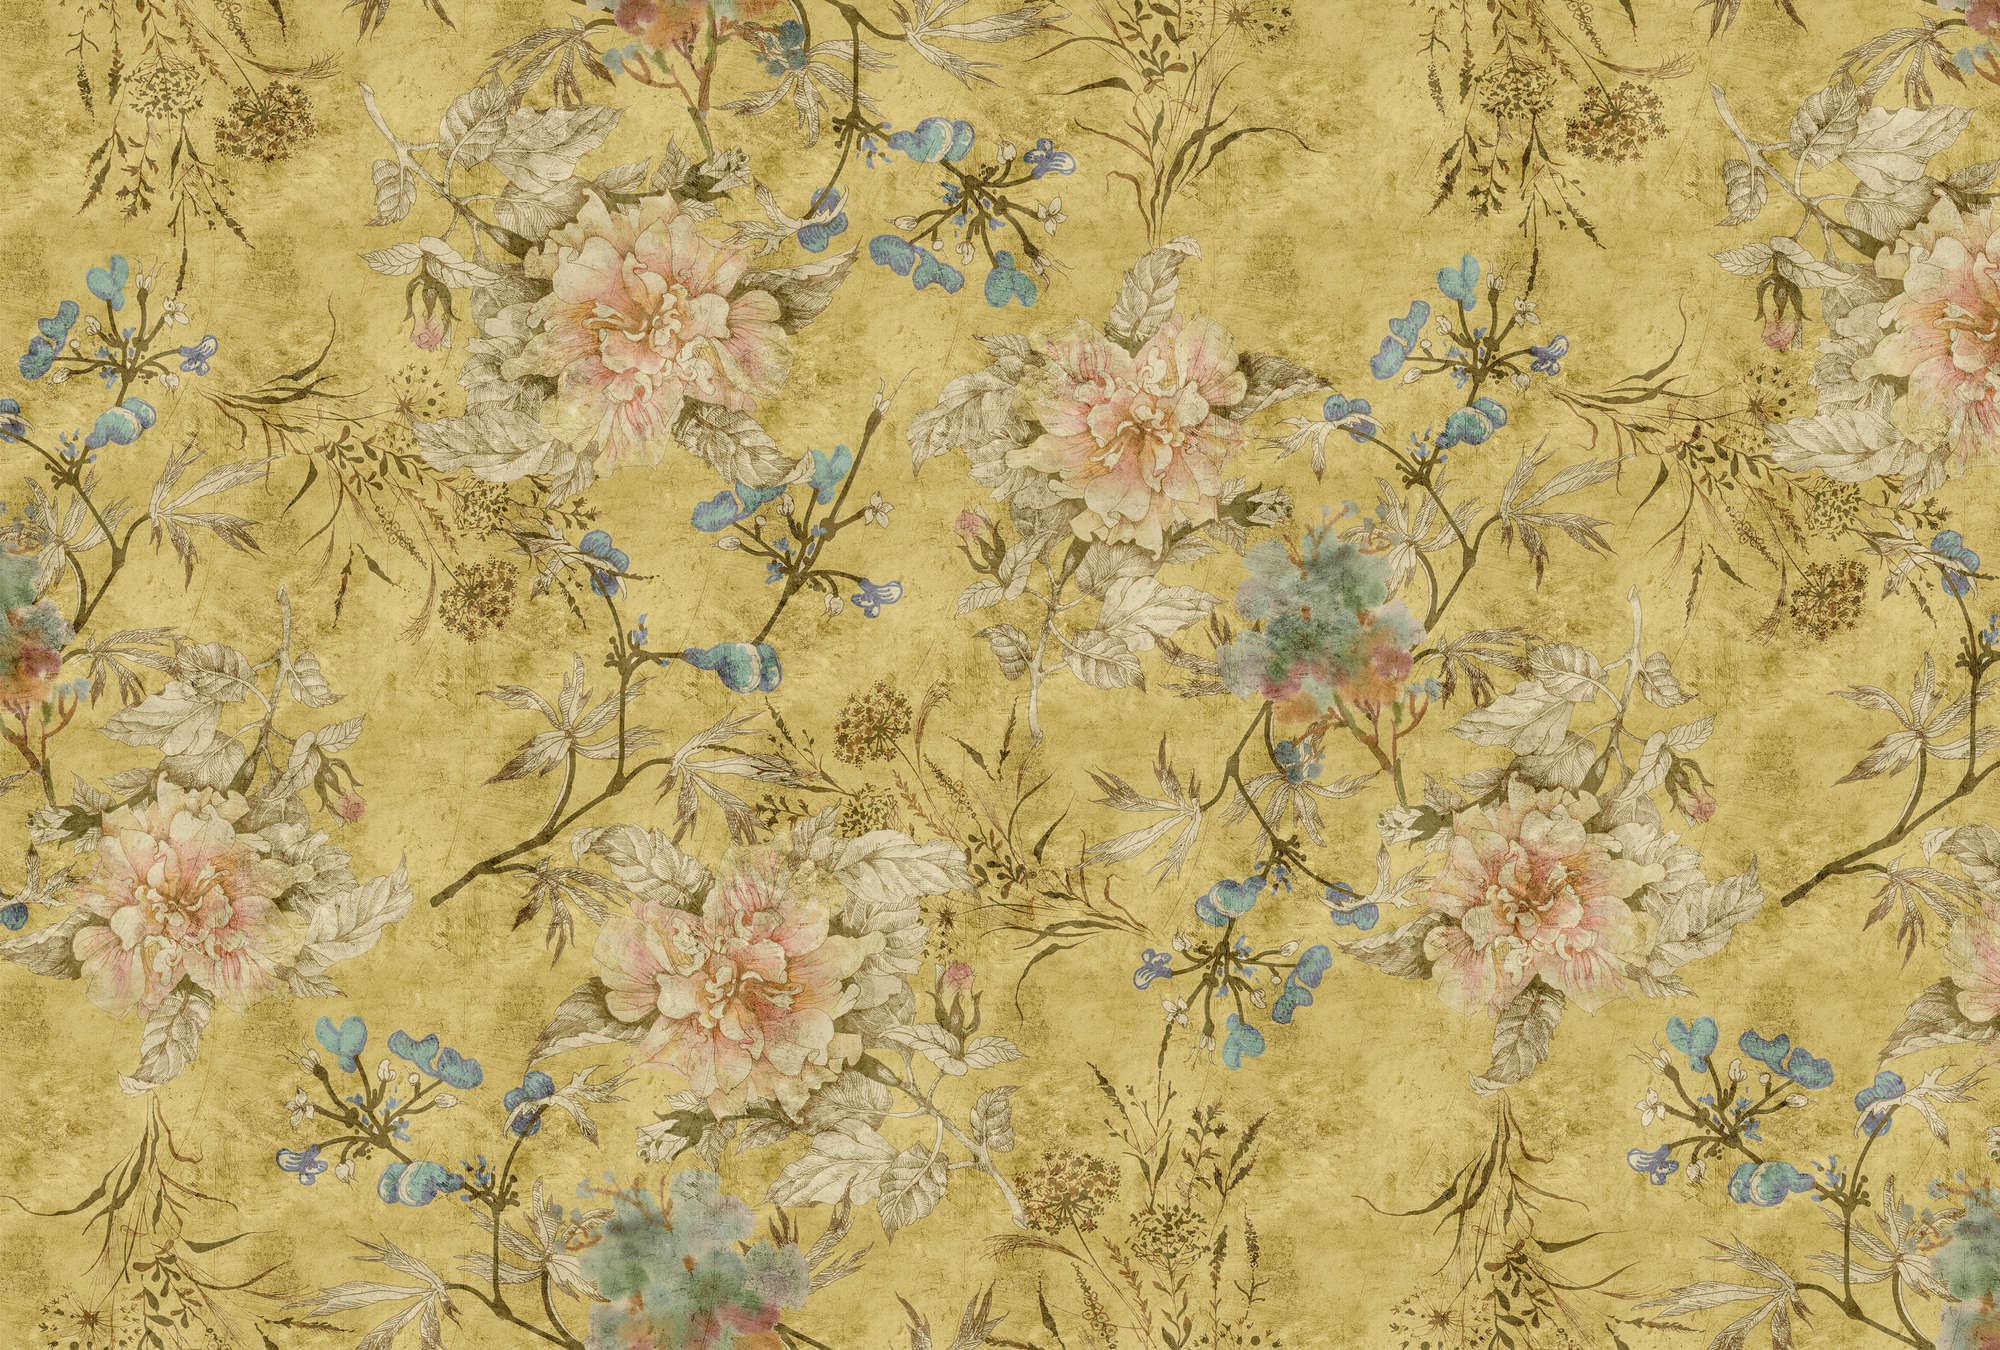             Tenderblossom 2 - Papel Pintado Floral Vintage - Textura Rayada - Amarillo | Premium Smooth Fleece
        